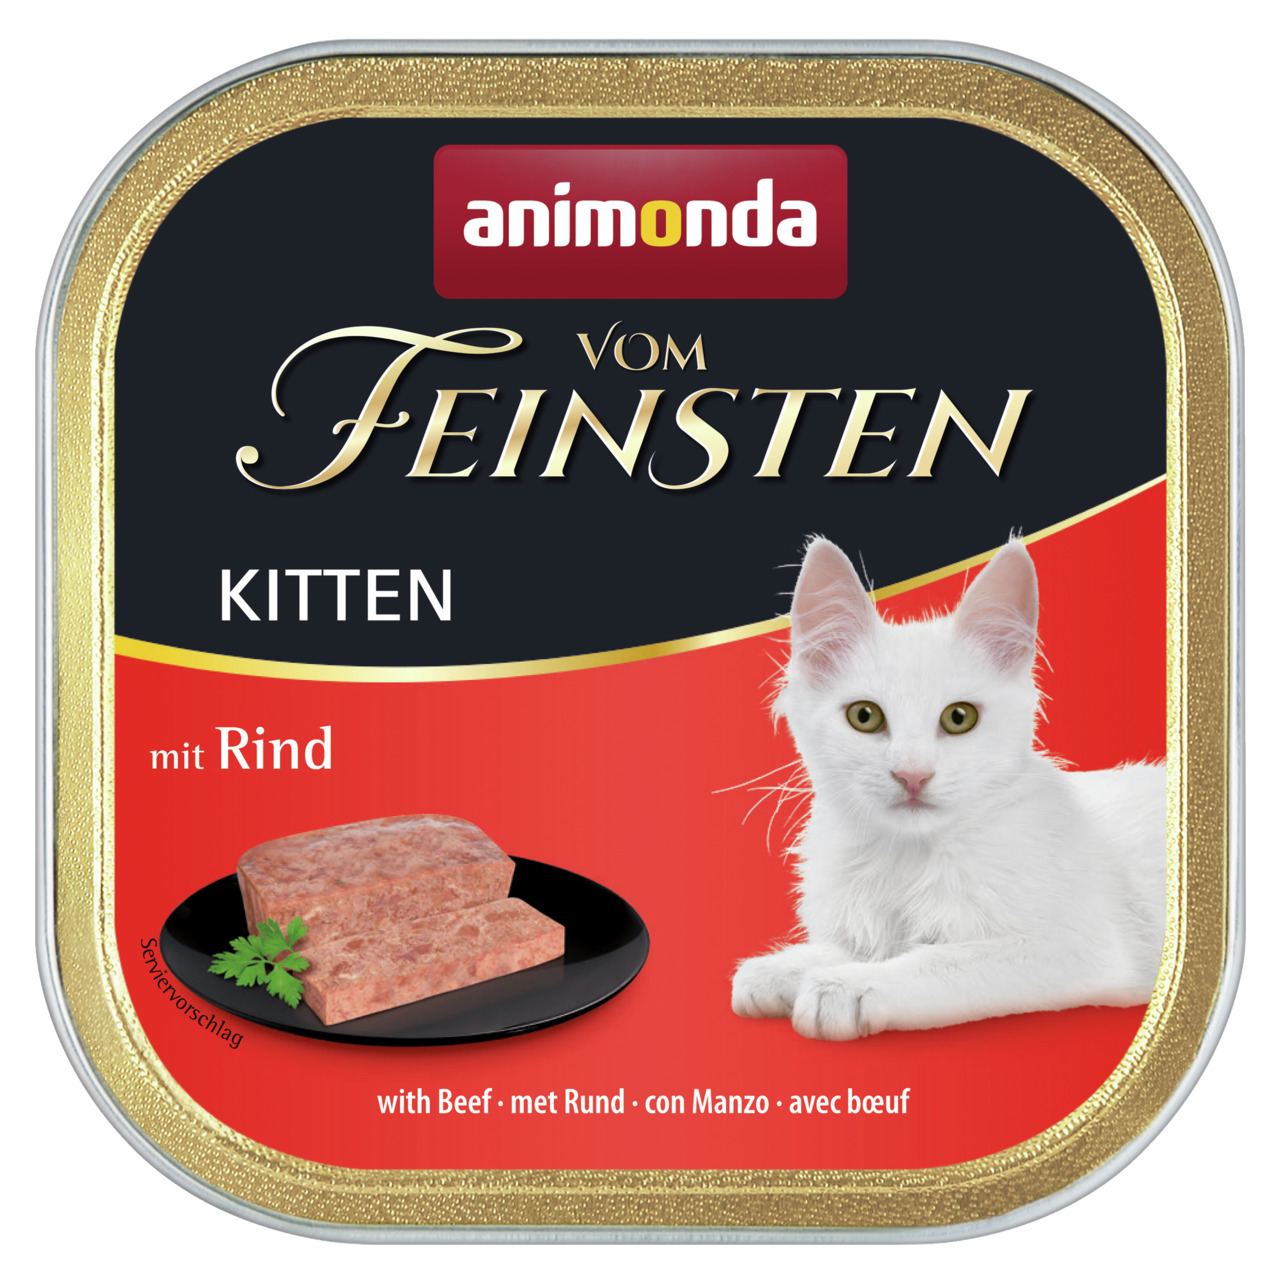 Animonda vom Feinsten Kitten mit Rind Katzen Nassfutter 100 g